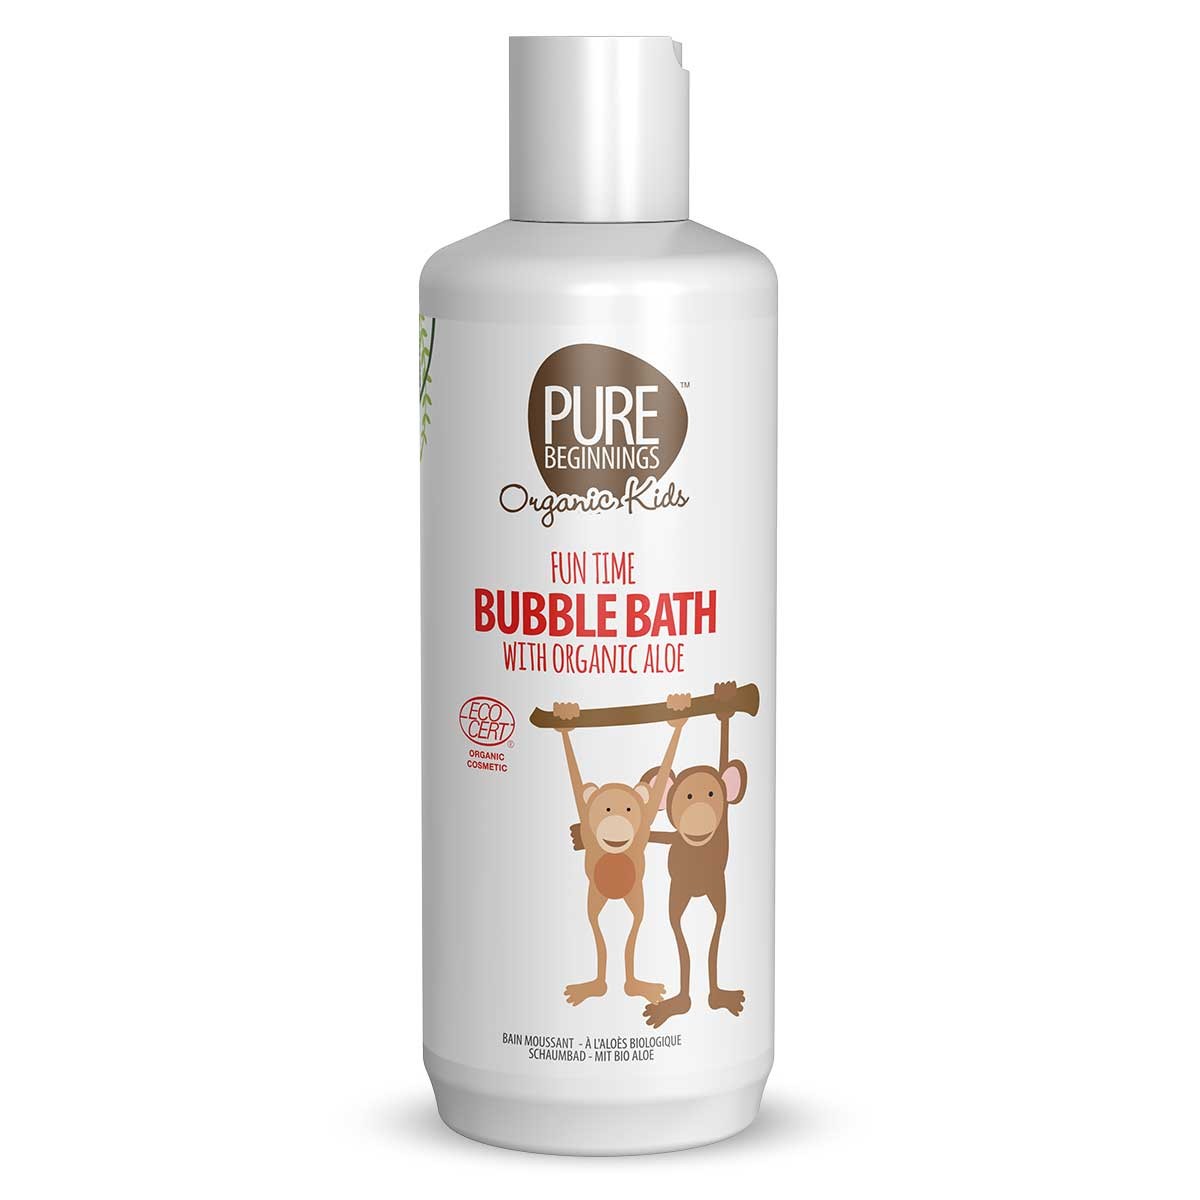 Pure Beginnings Fun Time Bubble Bath 375ml with Organic Aloe - 294506